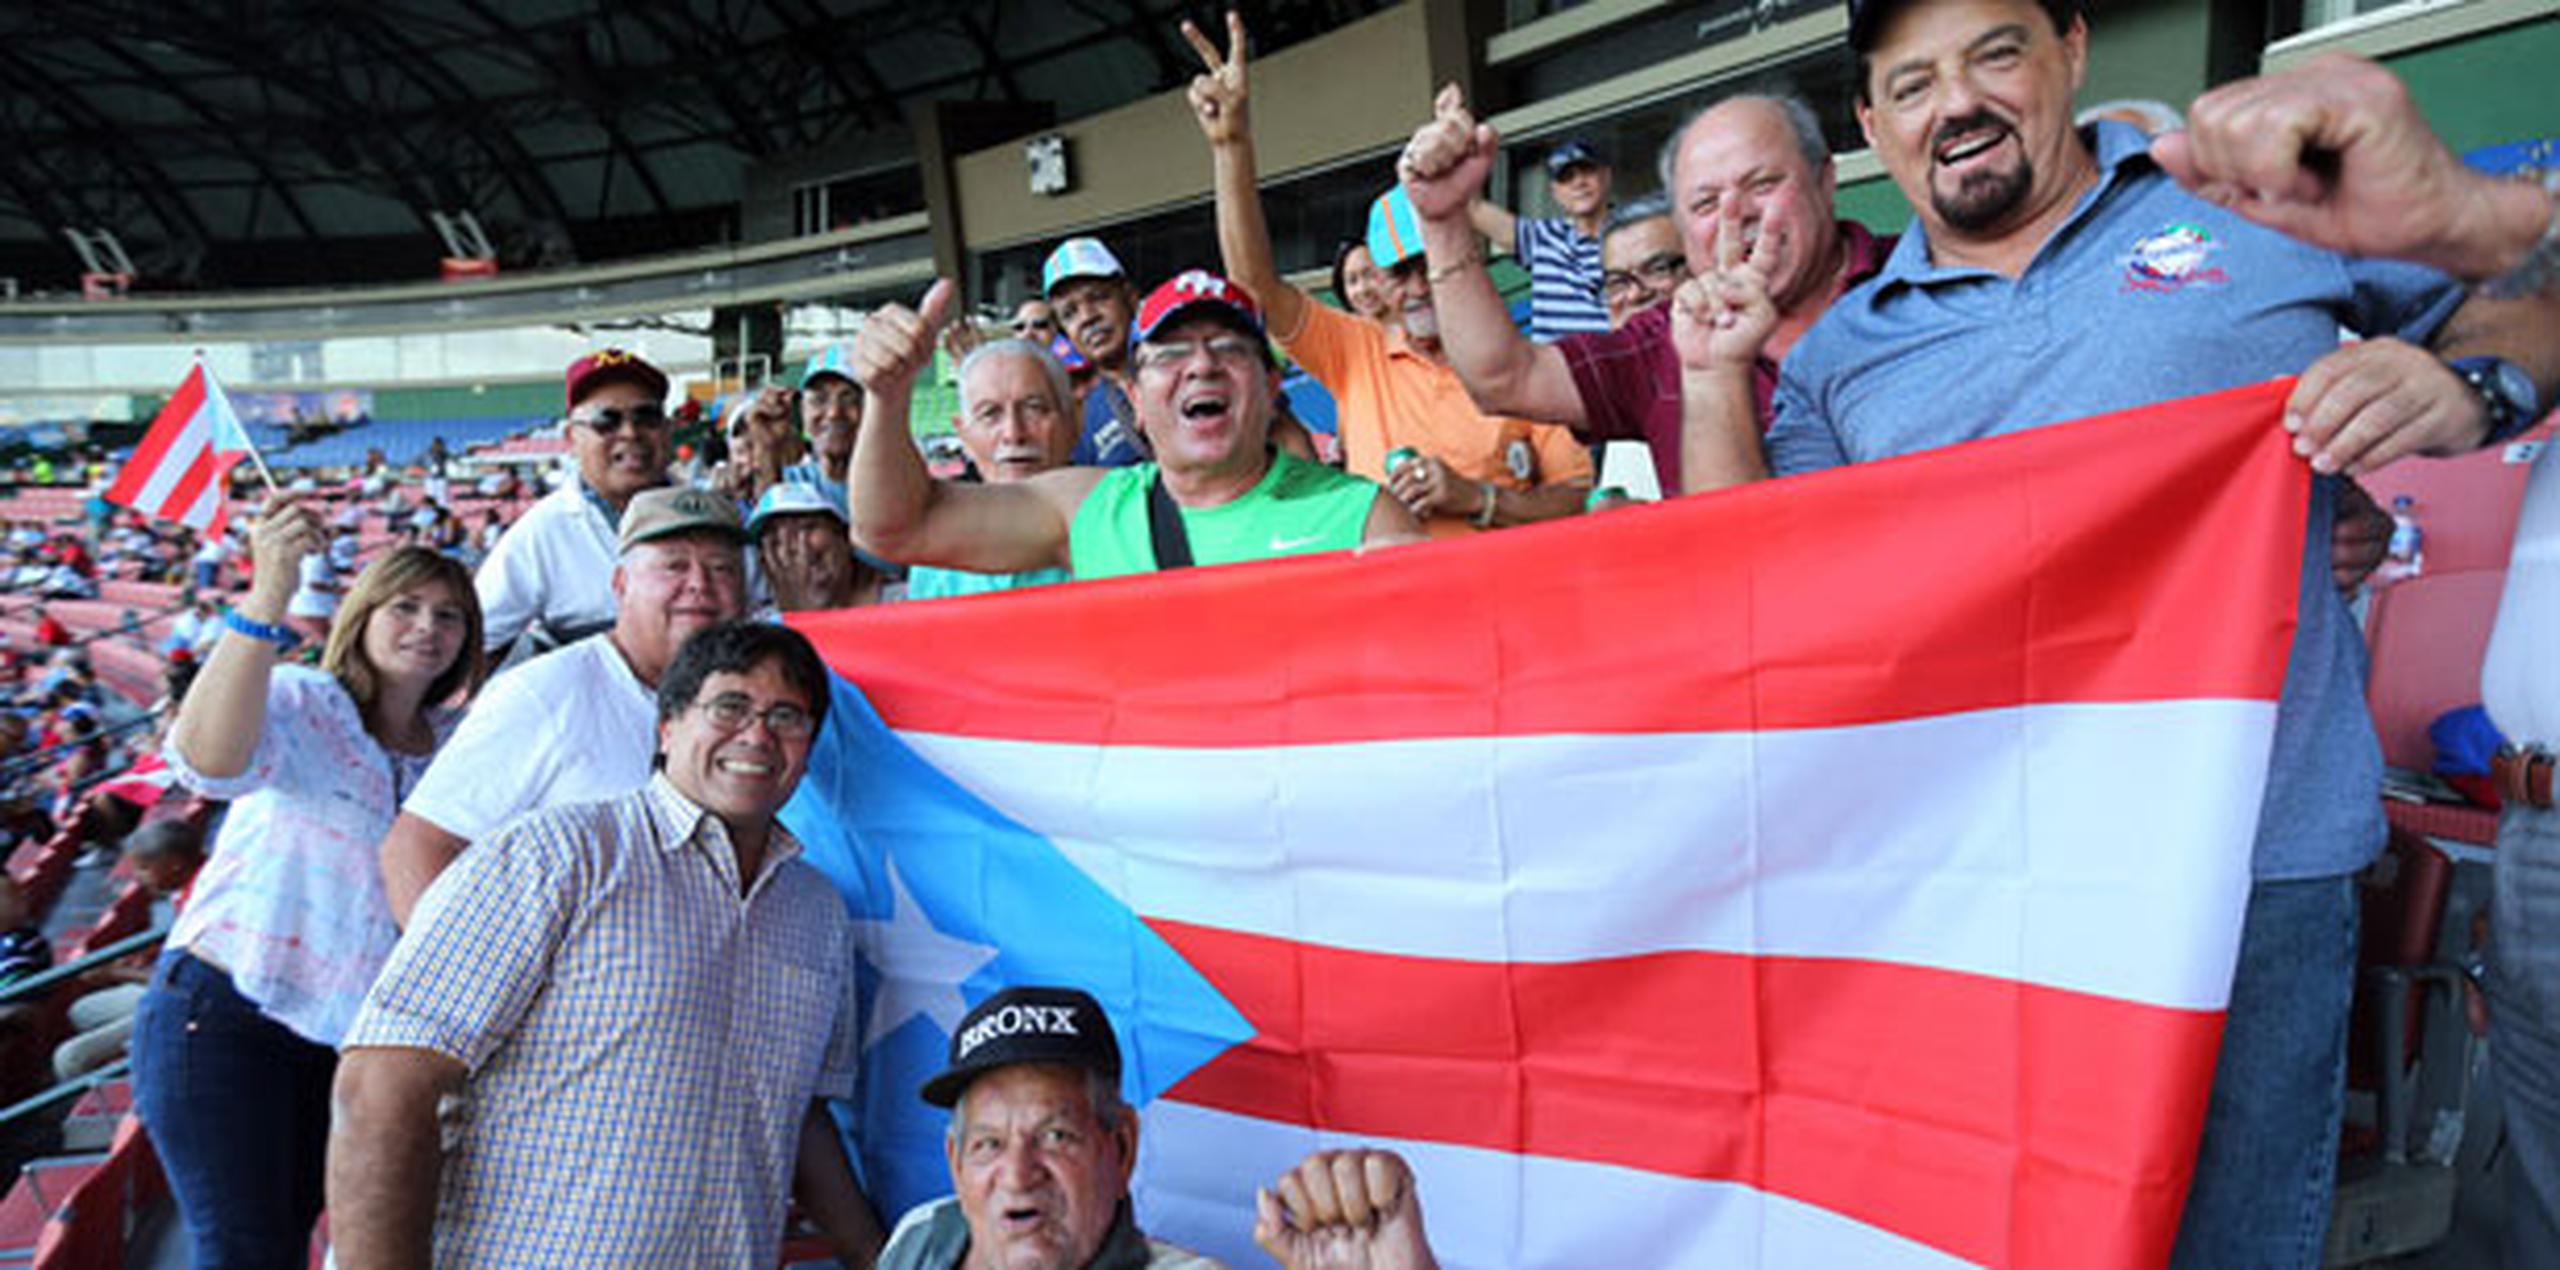 Banderas y camisetas de Puerto Rico fueron vistas en las tribunas. (juan.martinez@gfrmedia.com)